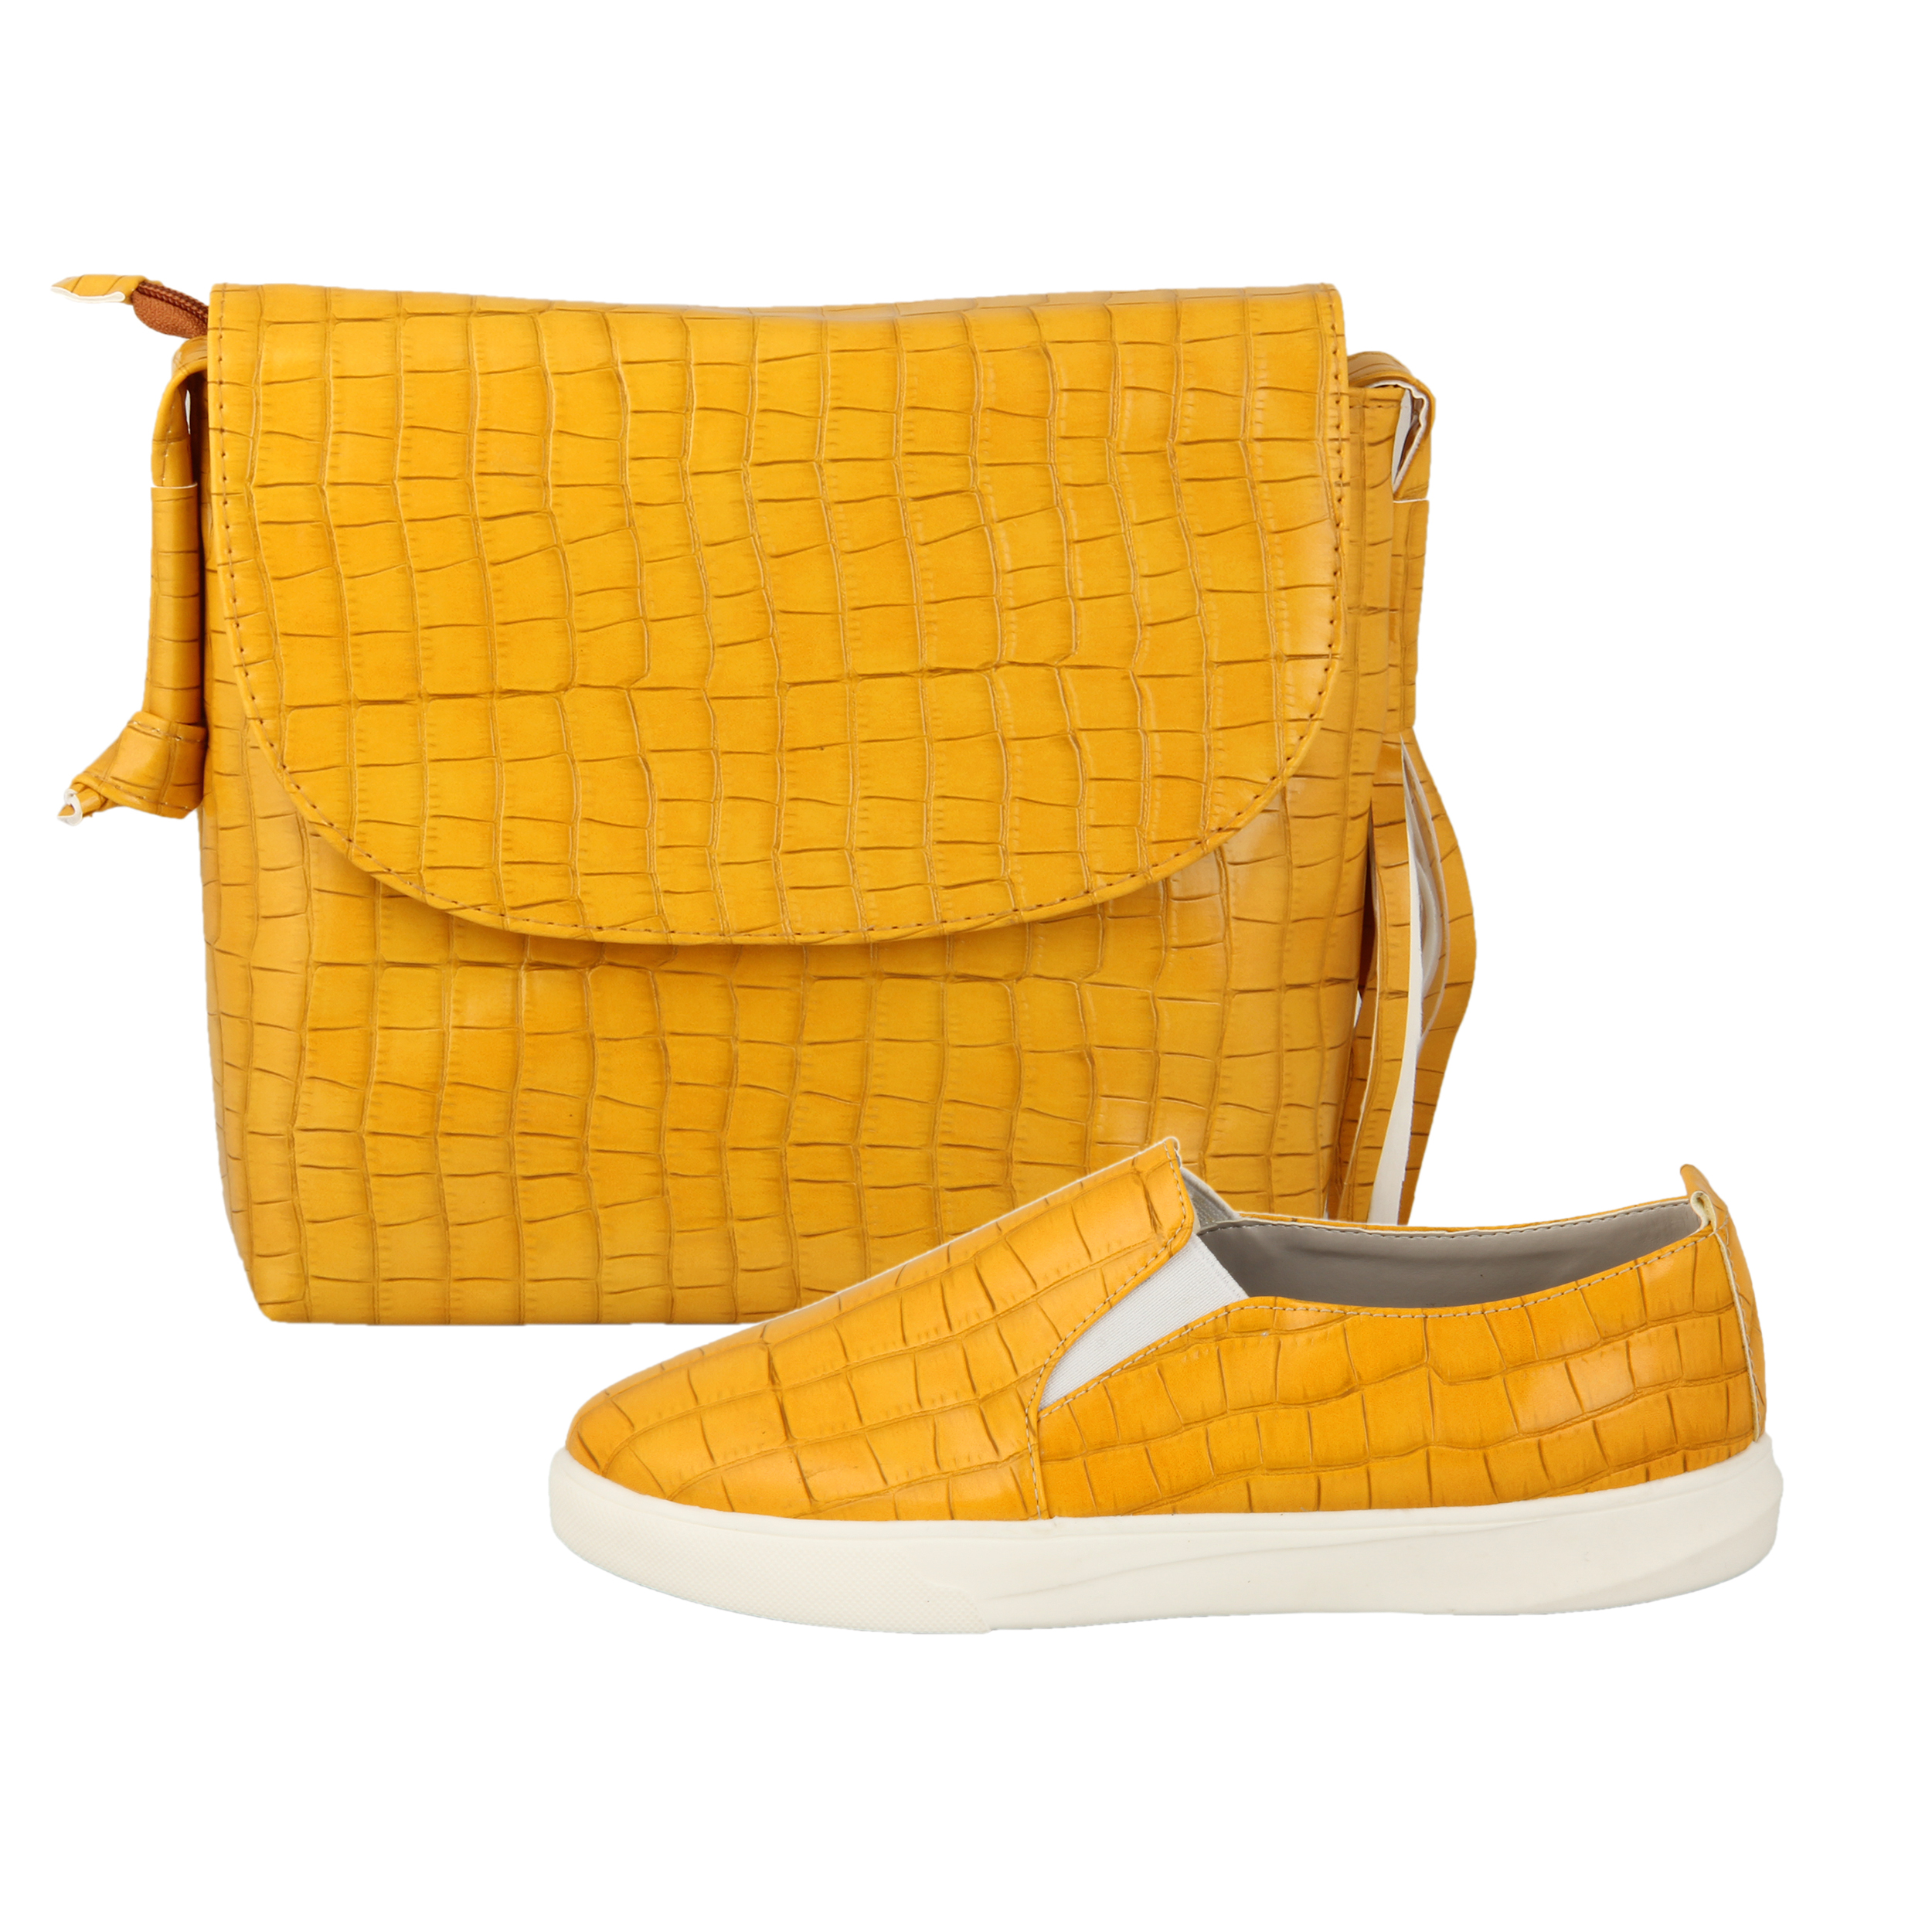 ست کیف و کفش زنانه کد st500 رنگ زرد